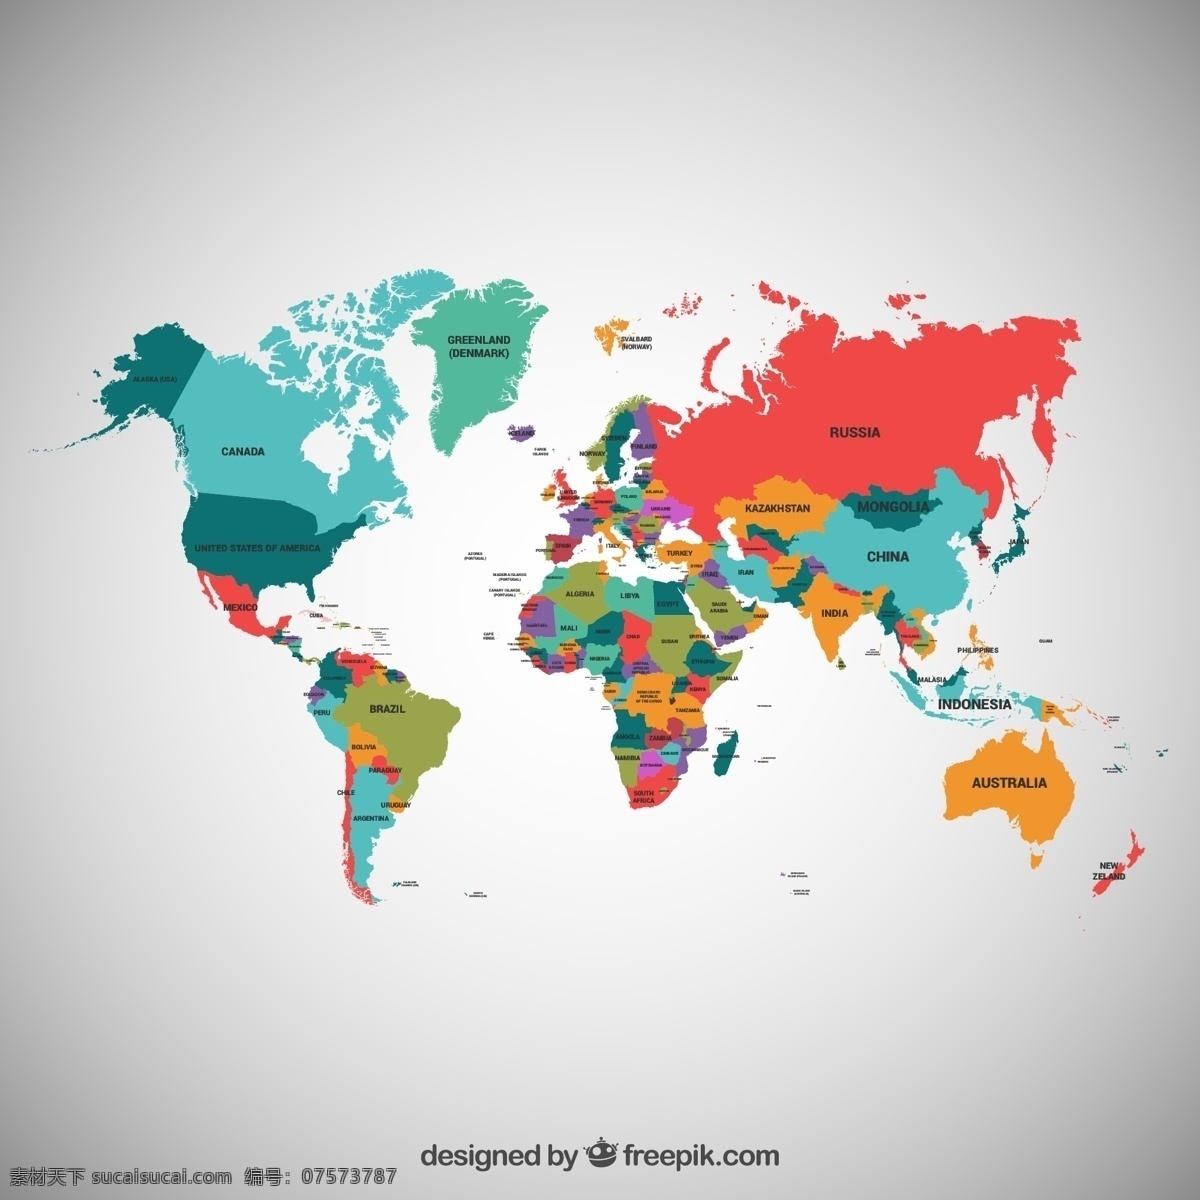 精美 彩色 世界地图 彩色世界地图 精美世界地图 世界地图矢量 地图矢量图 创意世界地图